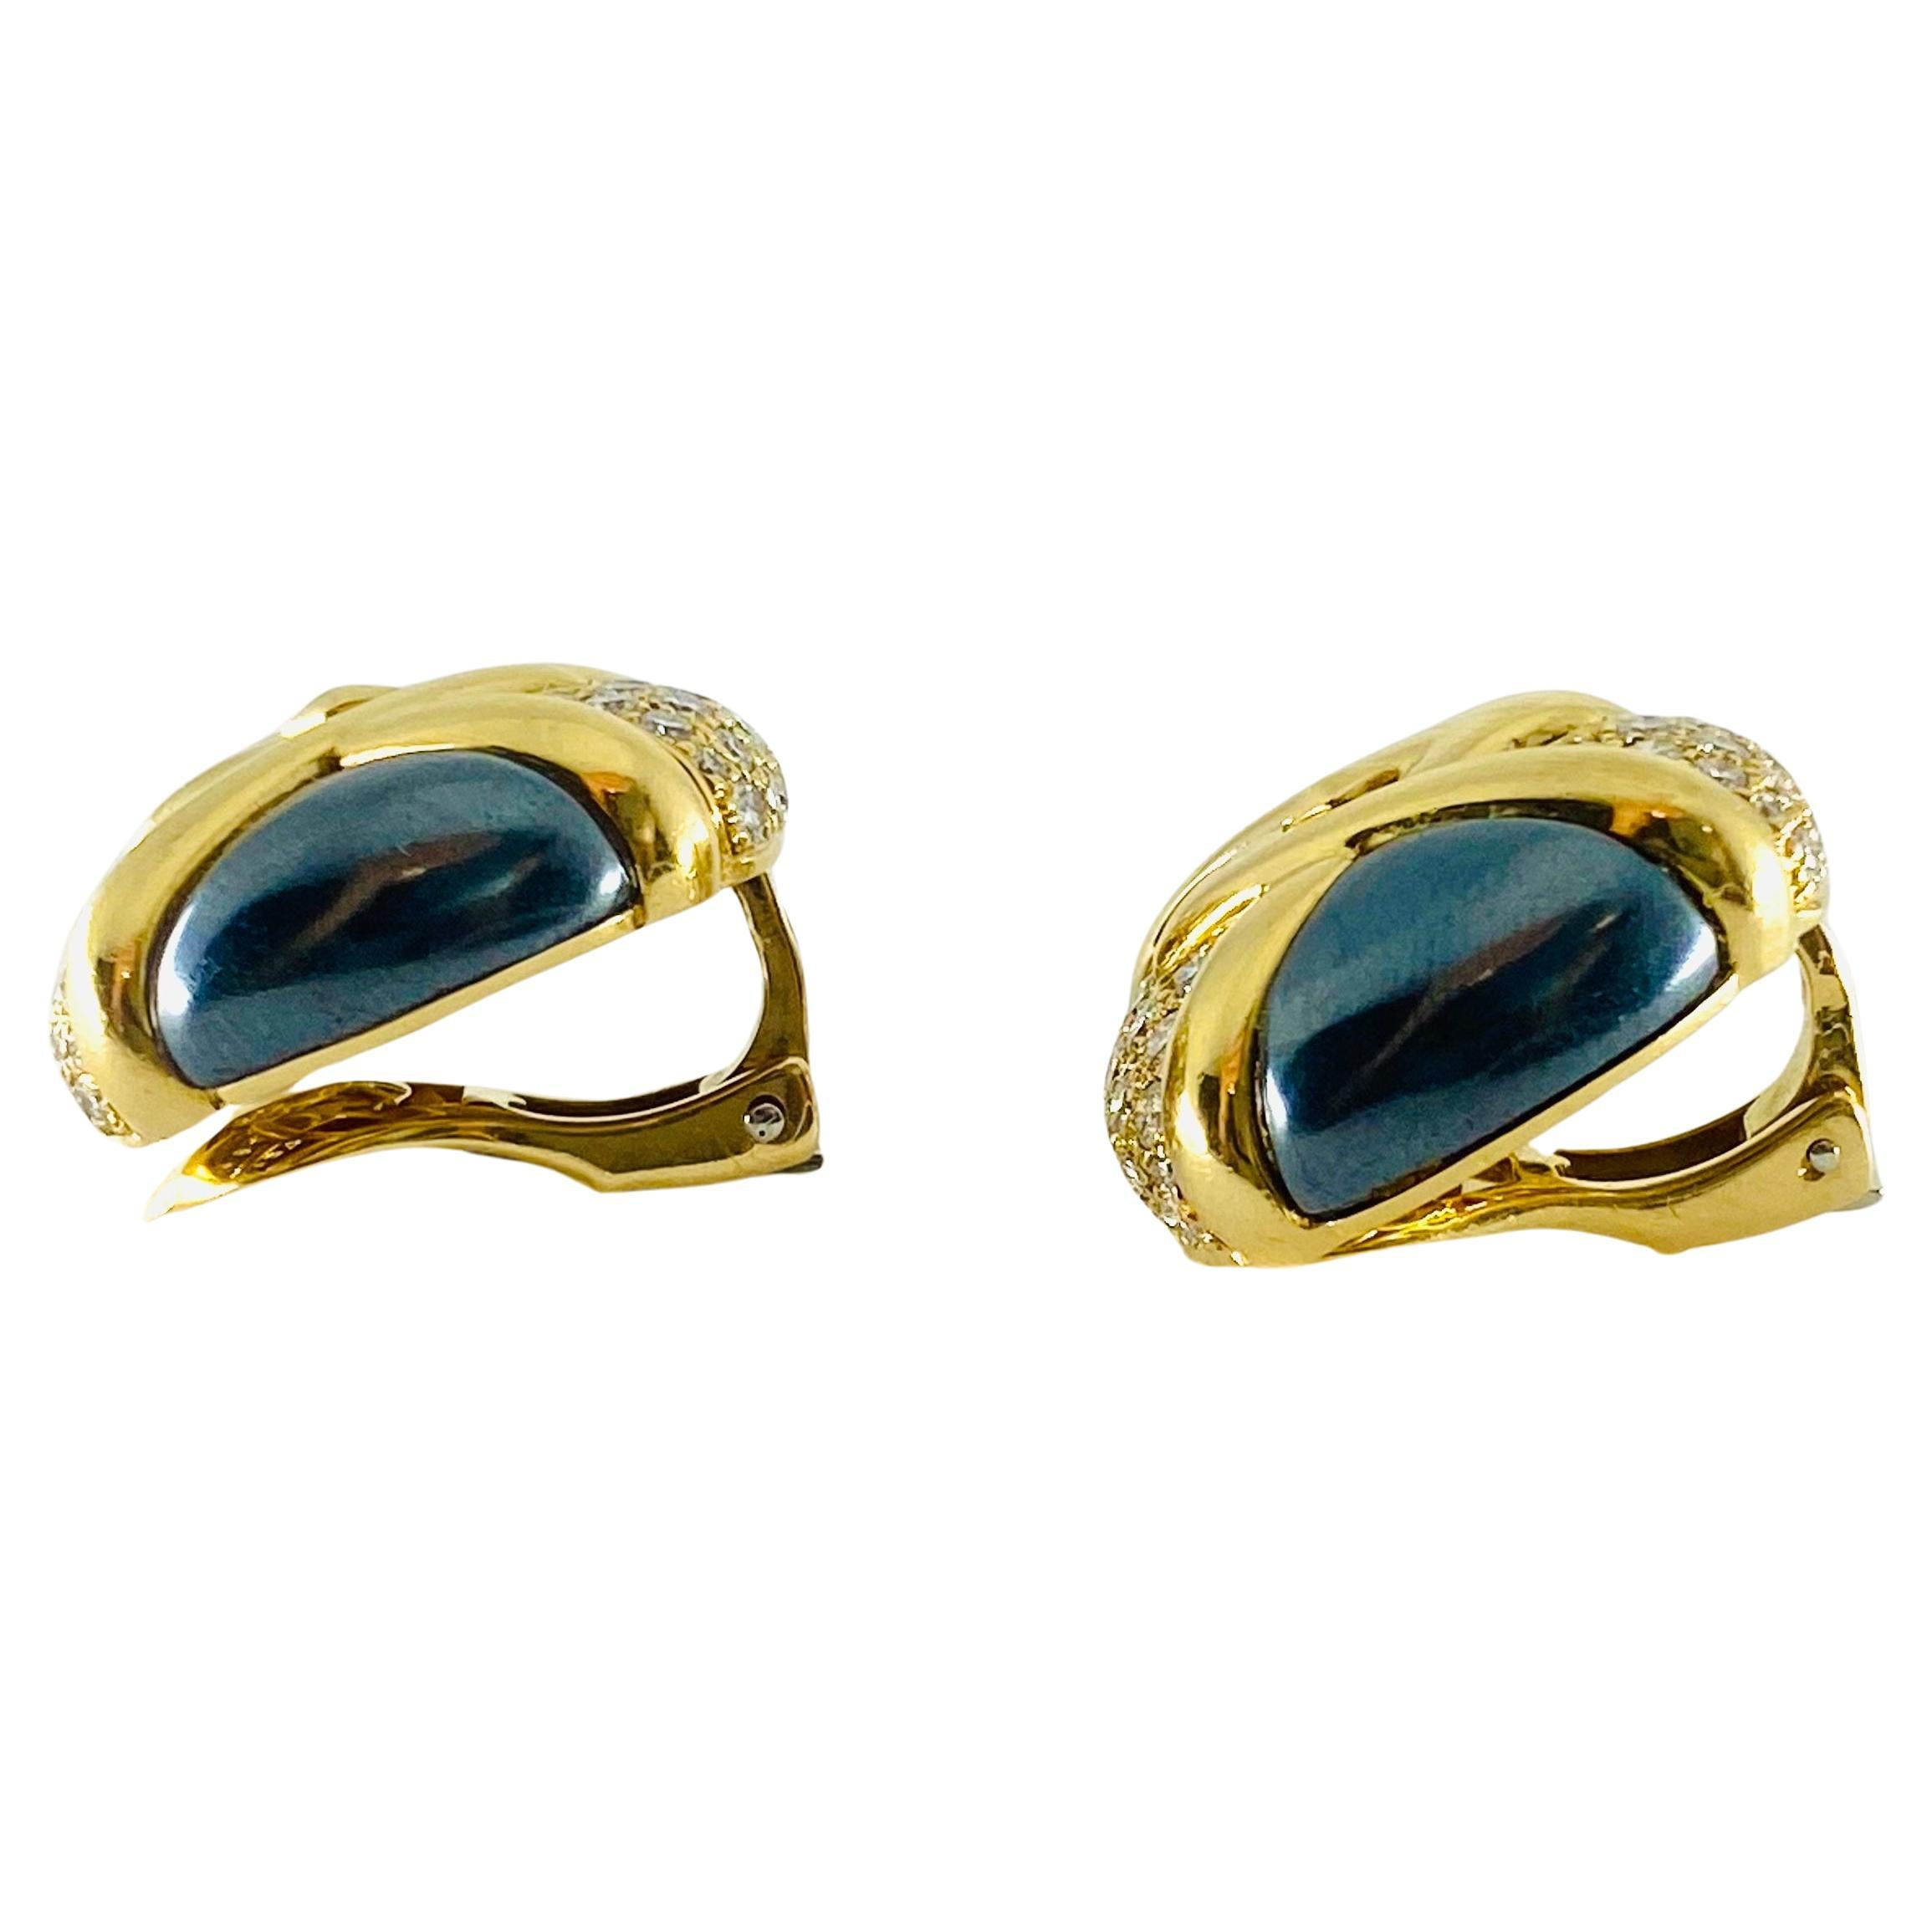  Bulgari Diamond Hematite 18K Gold Earrings  For Sale 1